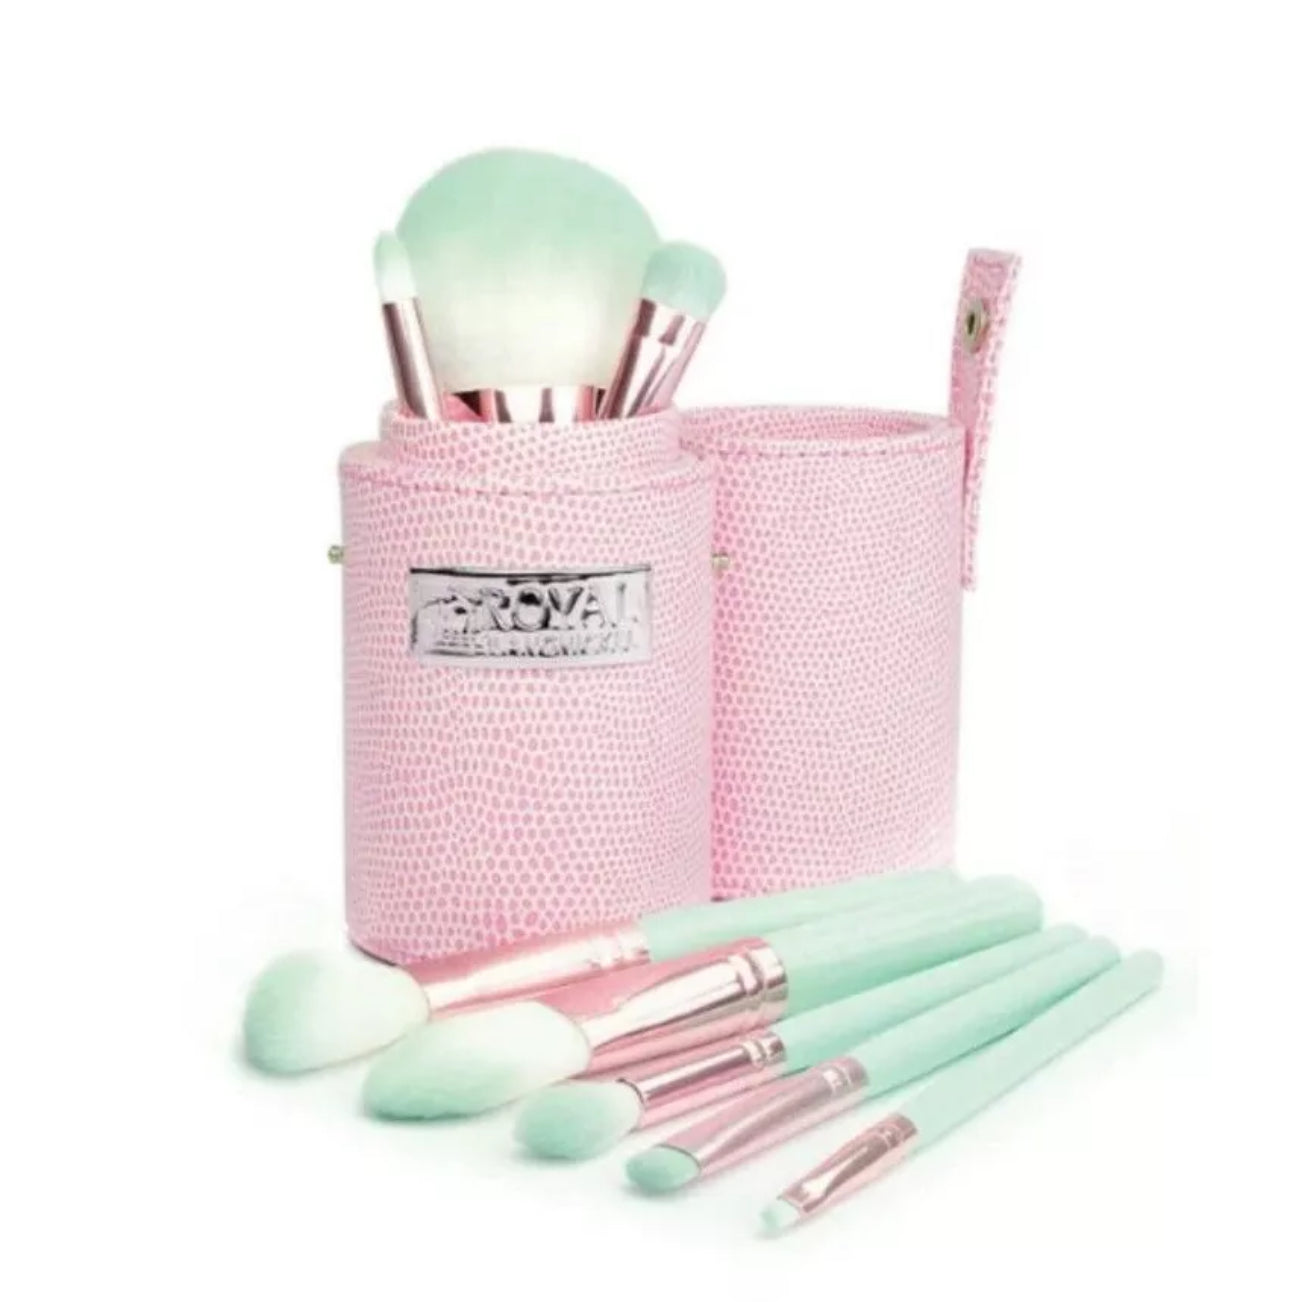 ROYAL & LANGNICKEL  Professional Makeup Brushes 9-Piece Travel Brush Kit